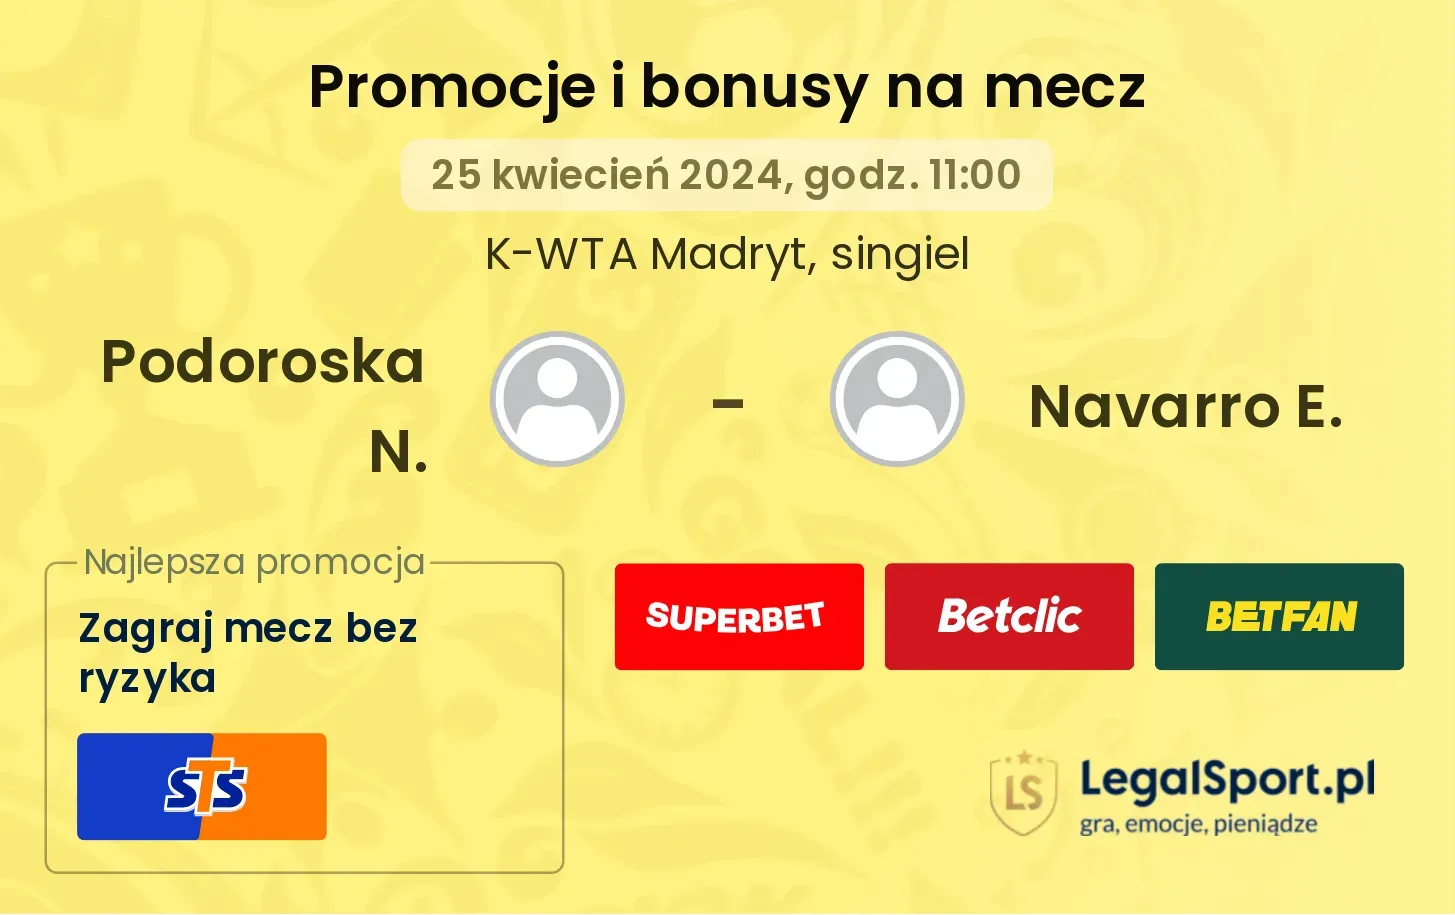 Podoroska N. - Navarro E. promocje bonusy na mecz